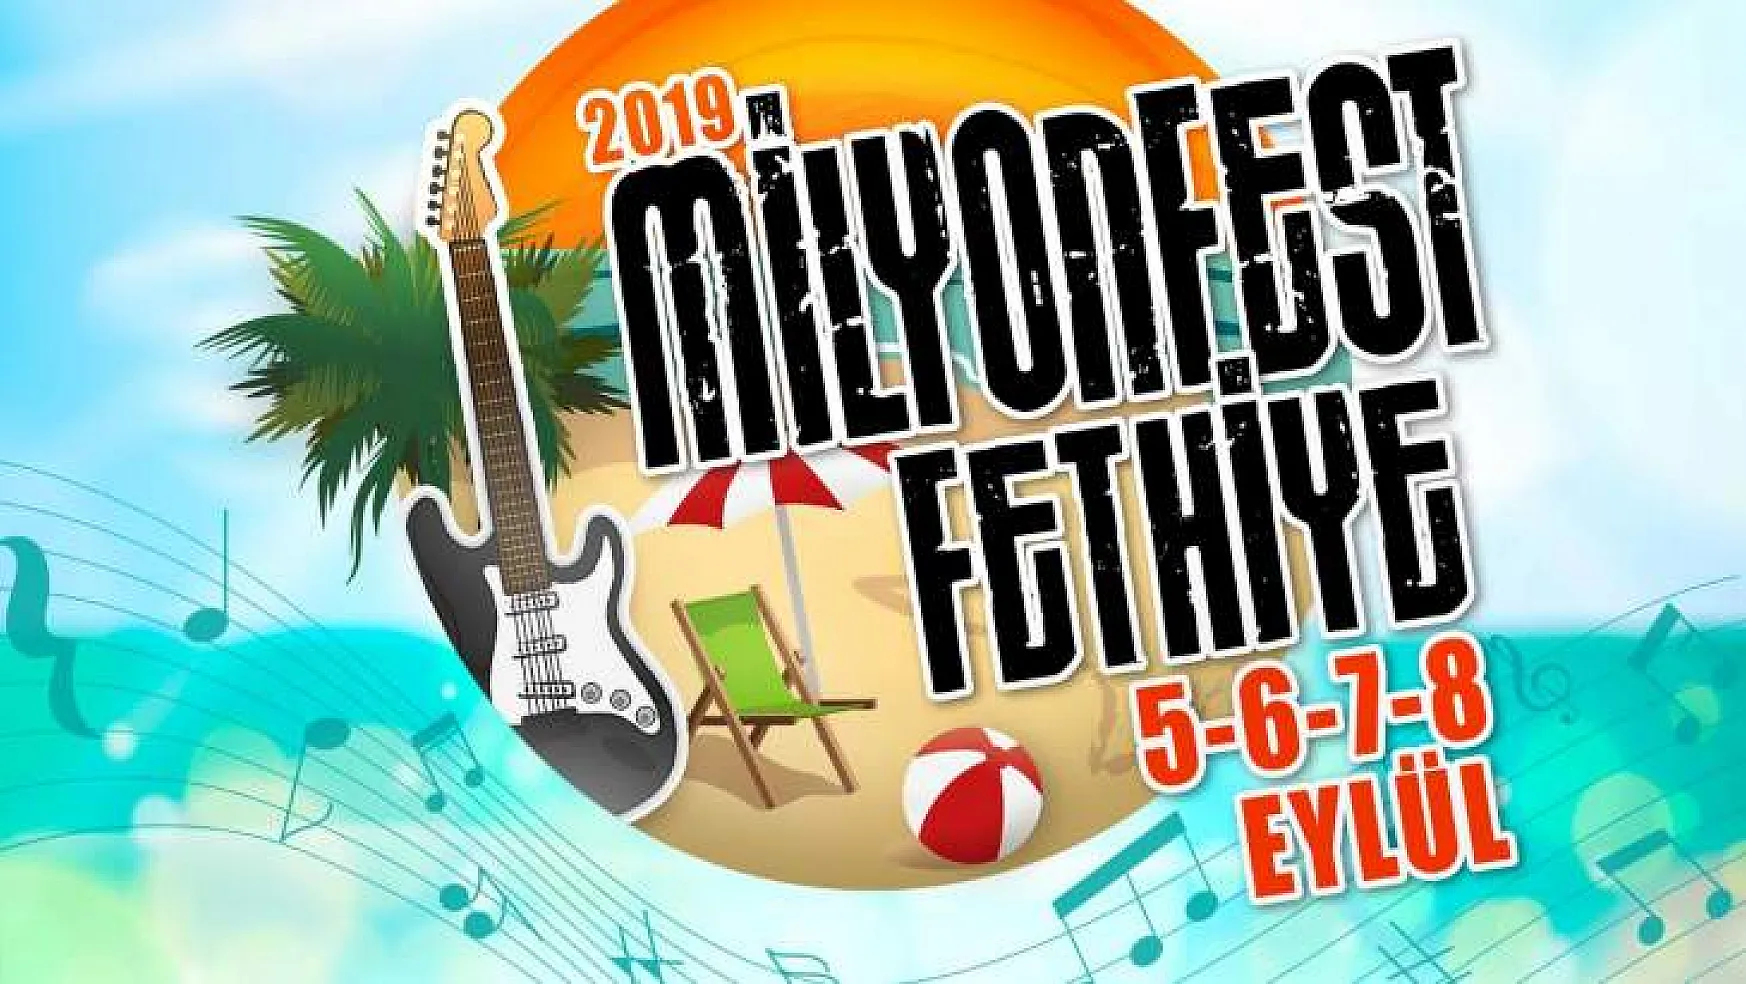 Milyonfest Fethiye'ye Geliyor